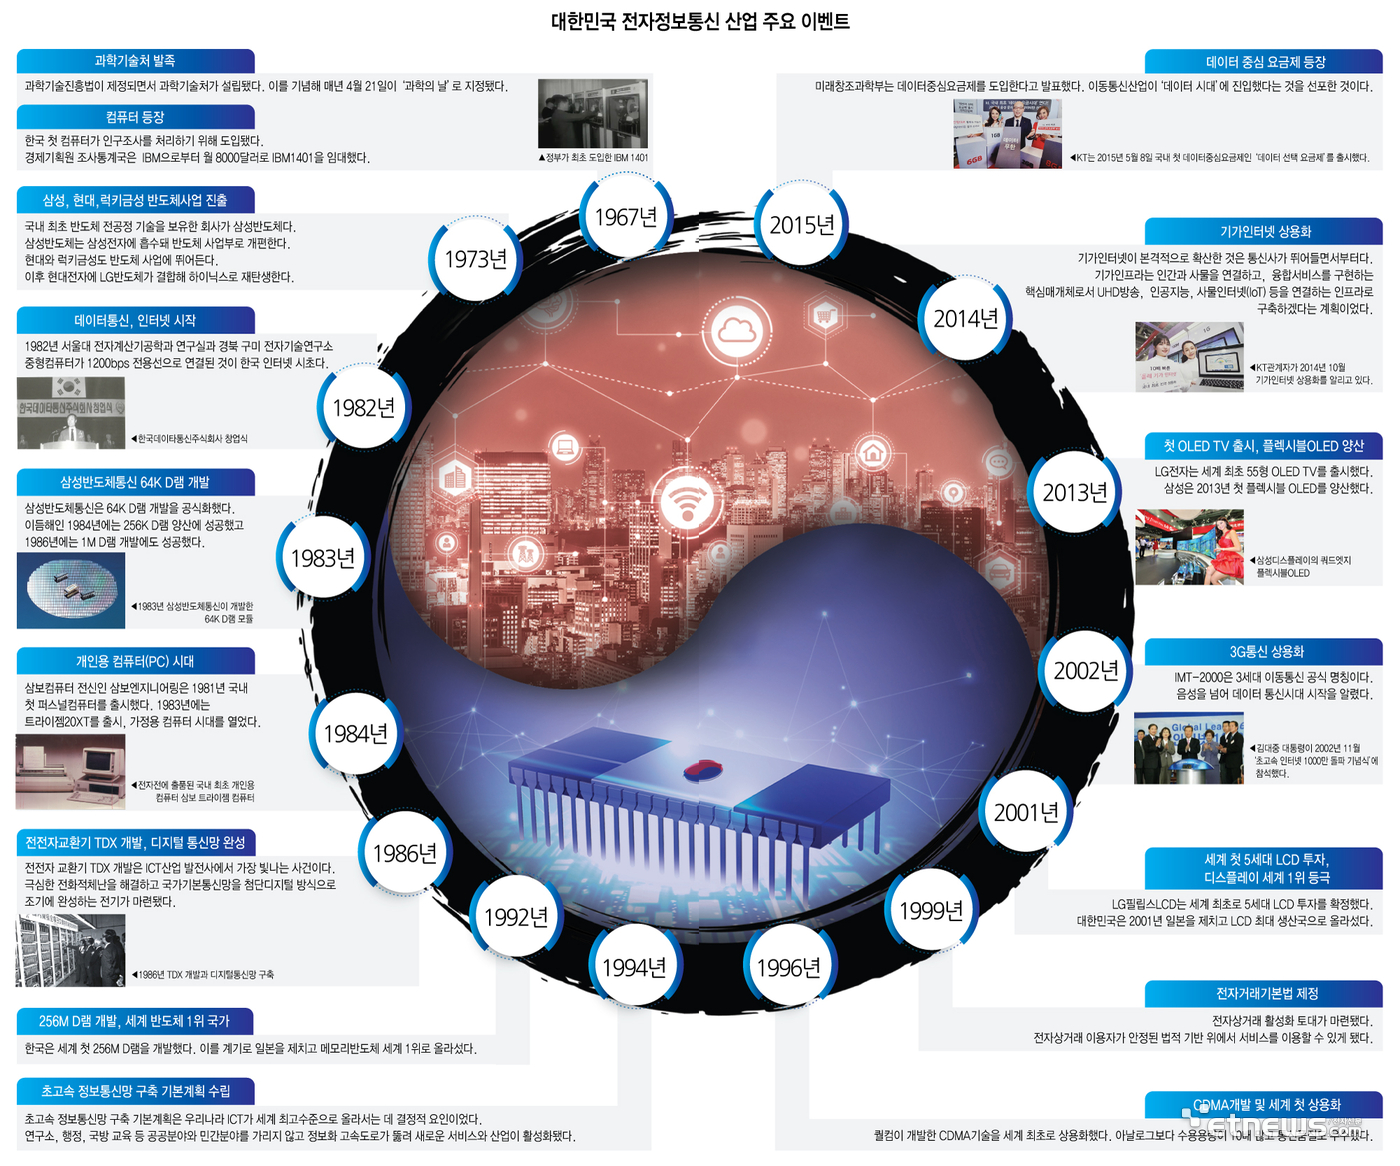 대한민국 전자정보통신 산업 주요 이벤트